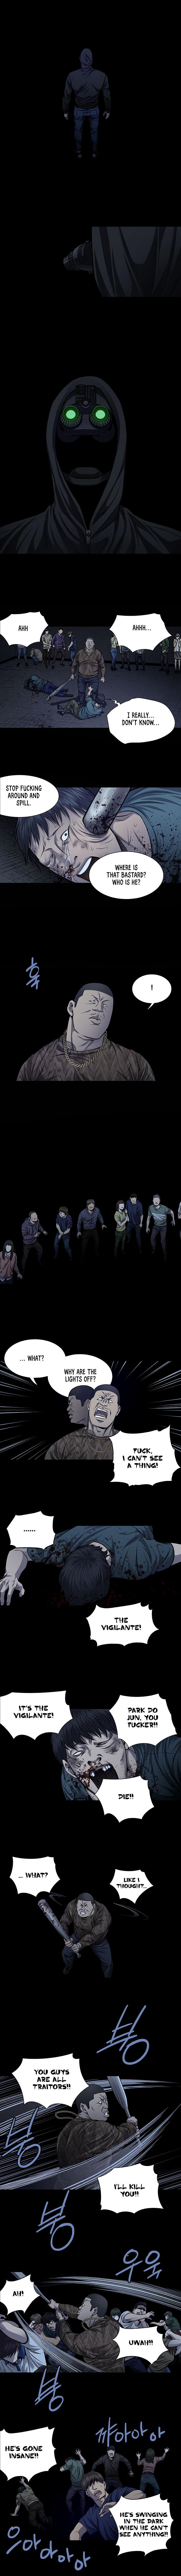 Vigilante Chapter 29 - Page 2